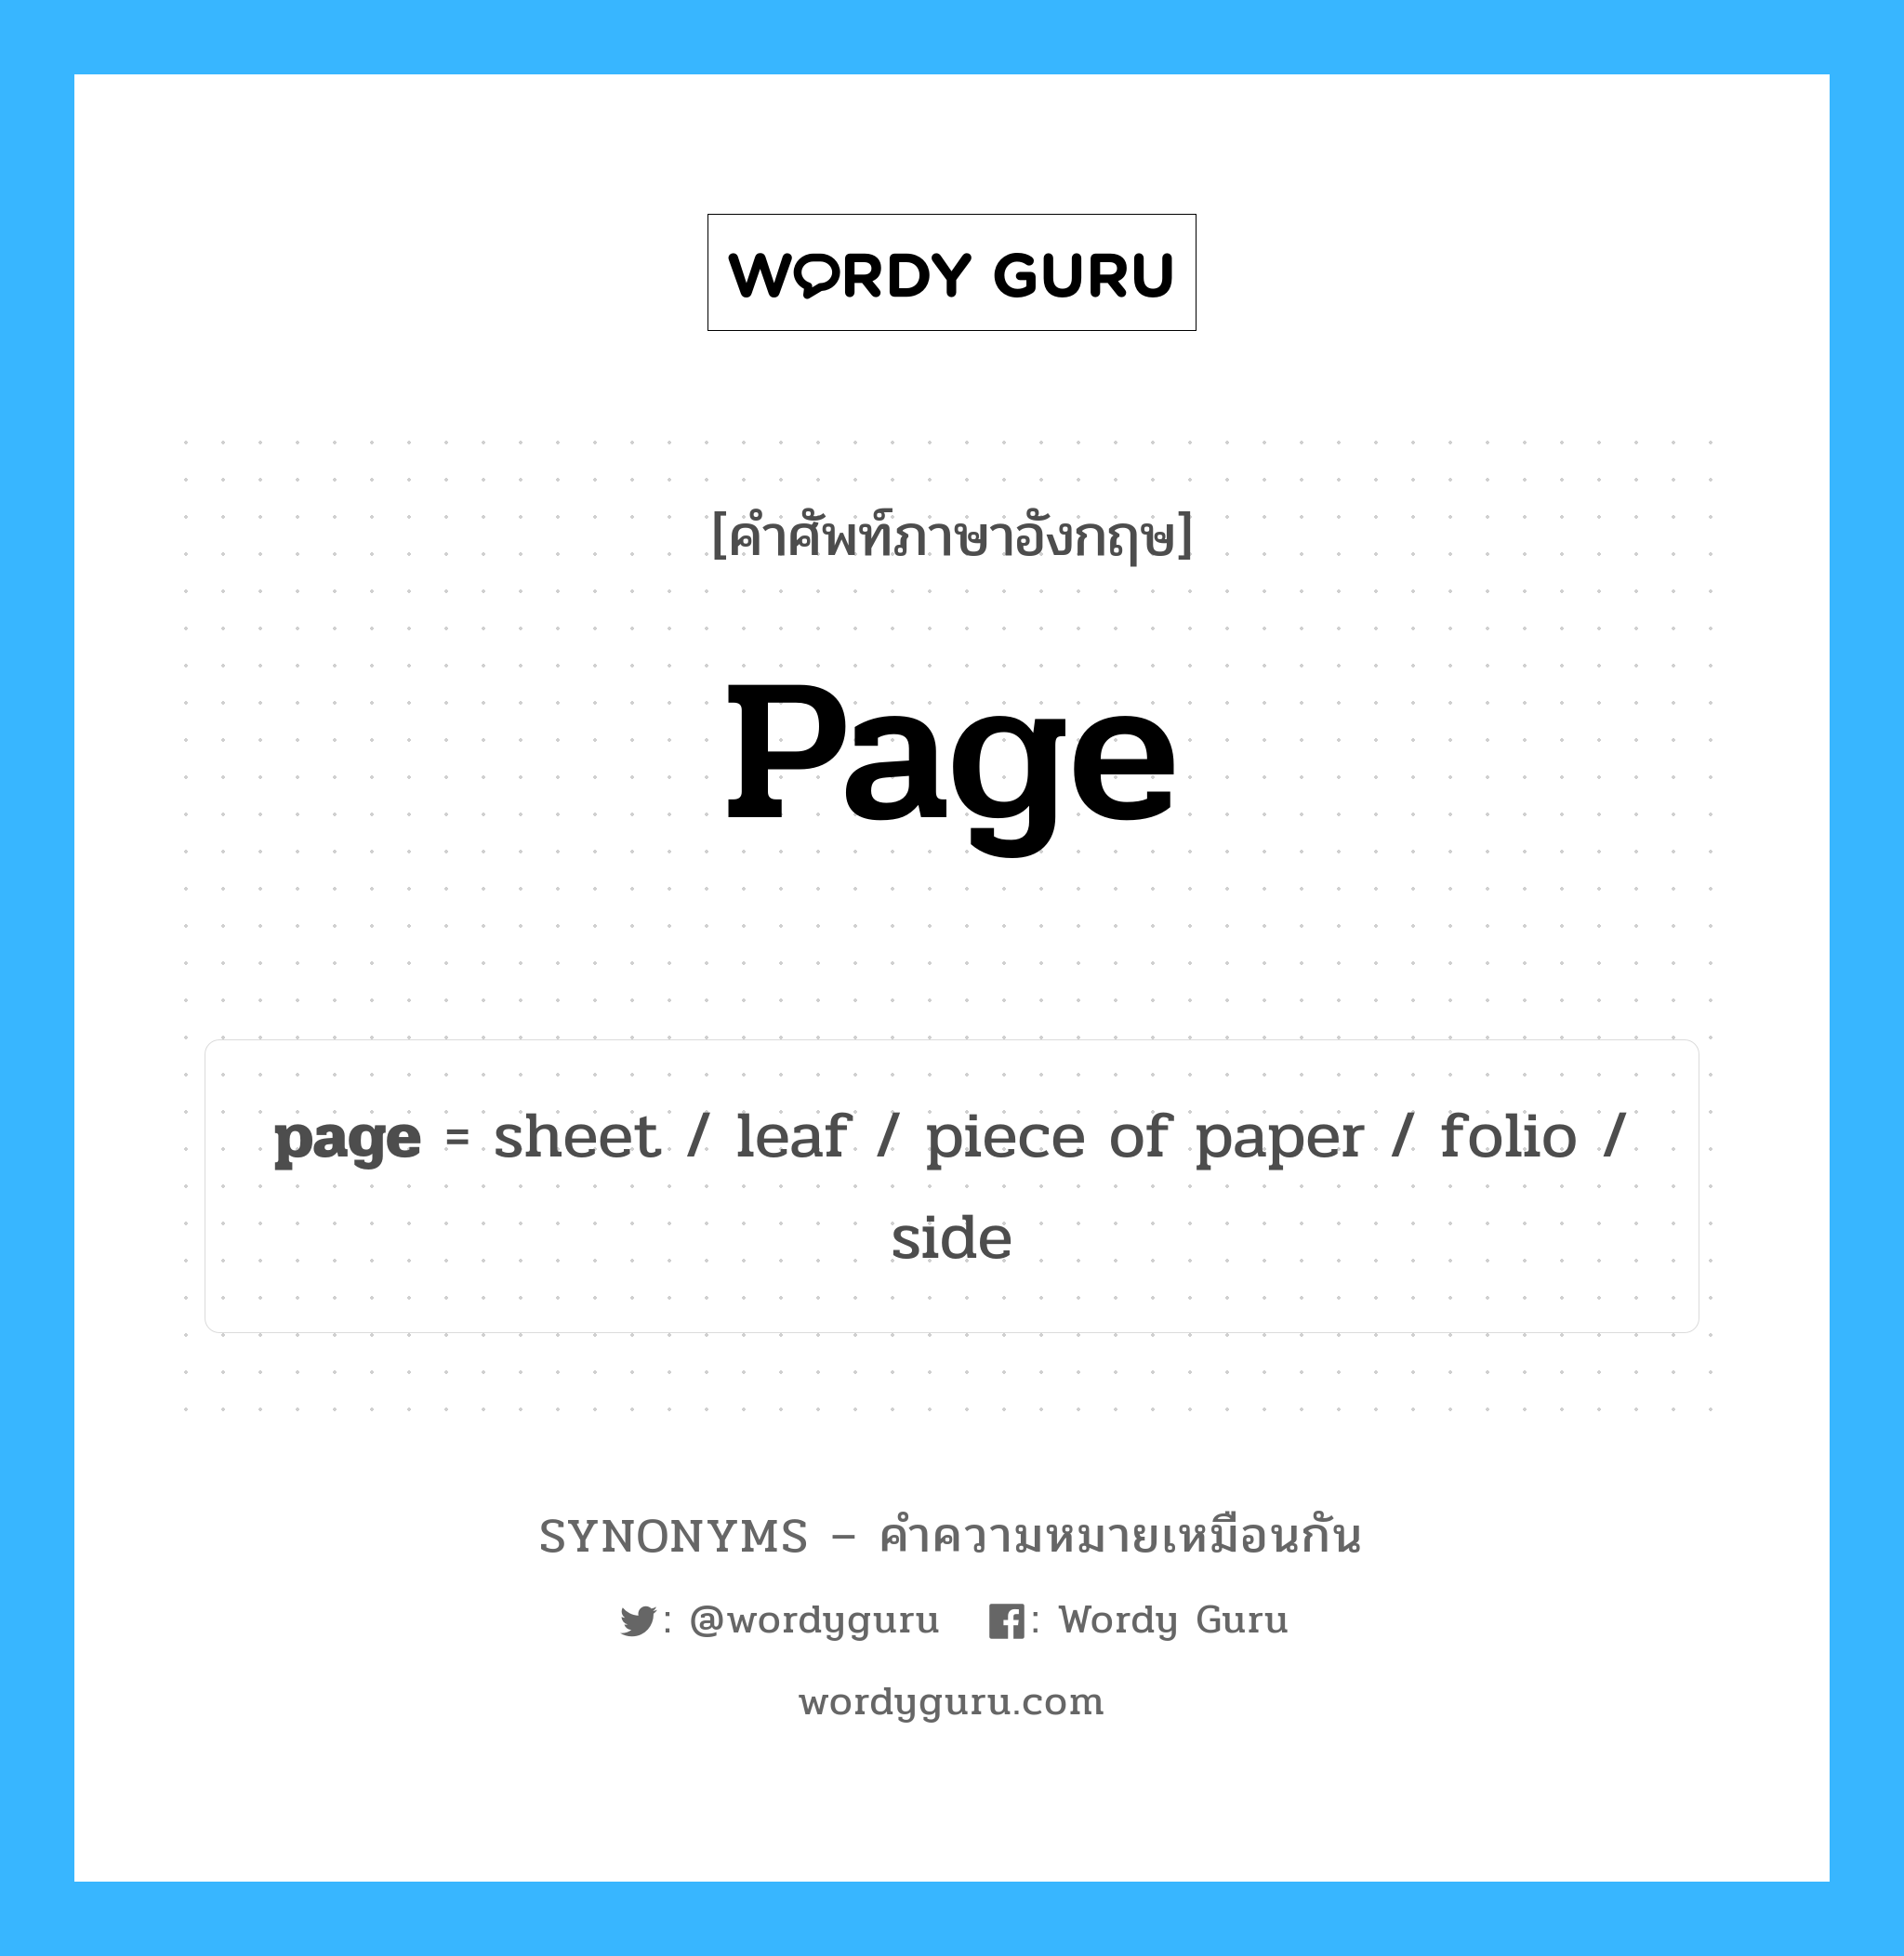 piece of paper เป็นหนึ่งใน page และมีคำอื่น ๆ อีกดังนี้, คำศัพท์ภาษาอังกฤษ piece of paper ความหมายคล้ายกันกับ page แปลว่า กระดาษ หมวด page